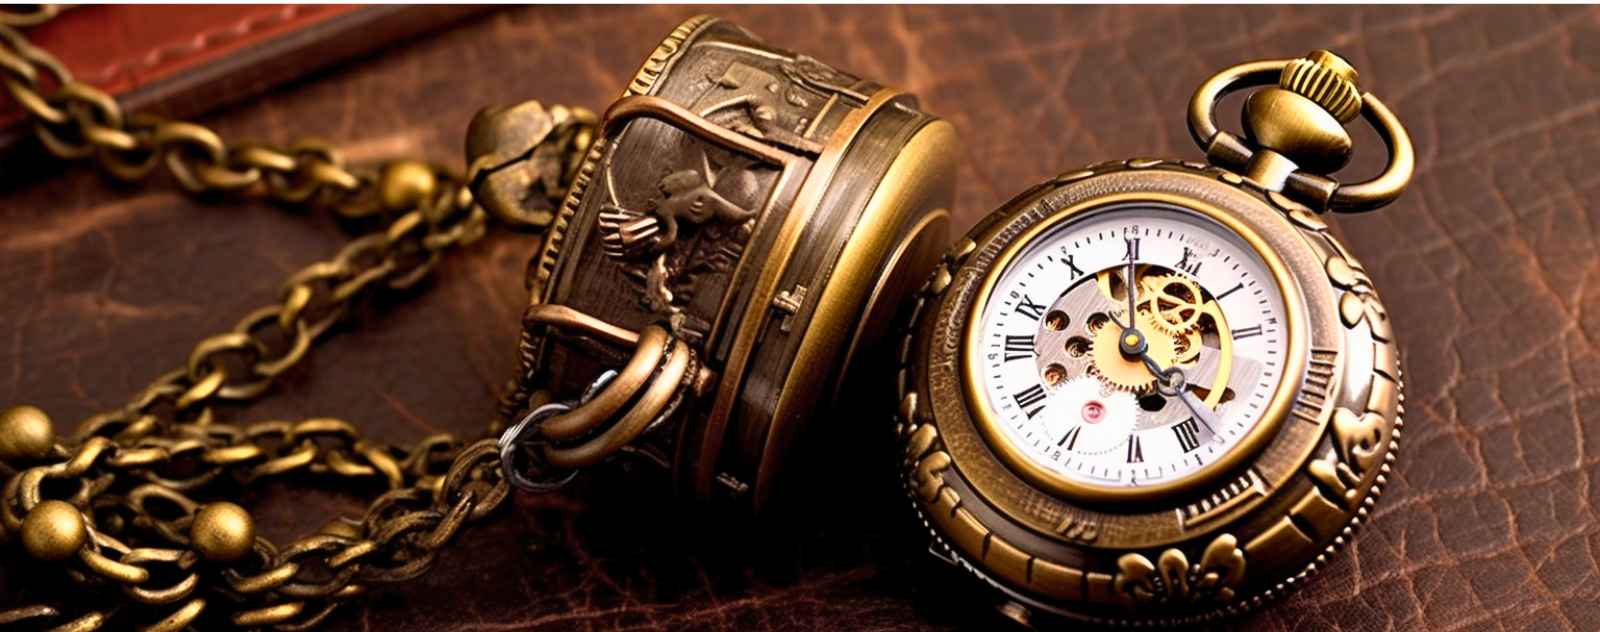 La chaine, un accessoire pour porter la montre de poche avec style